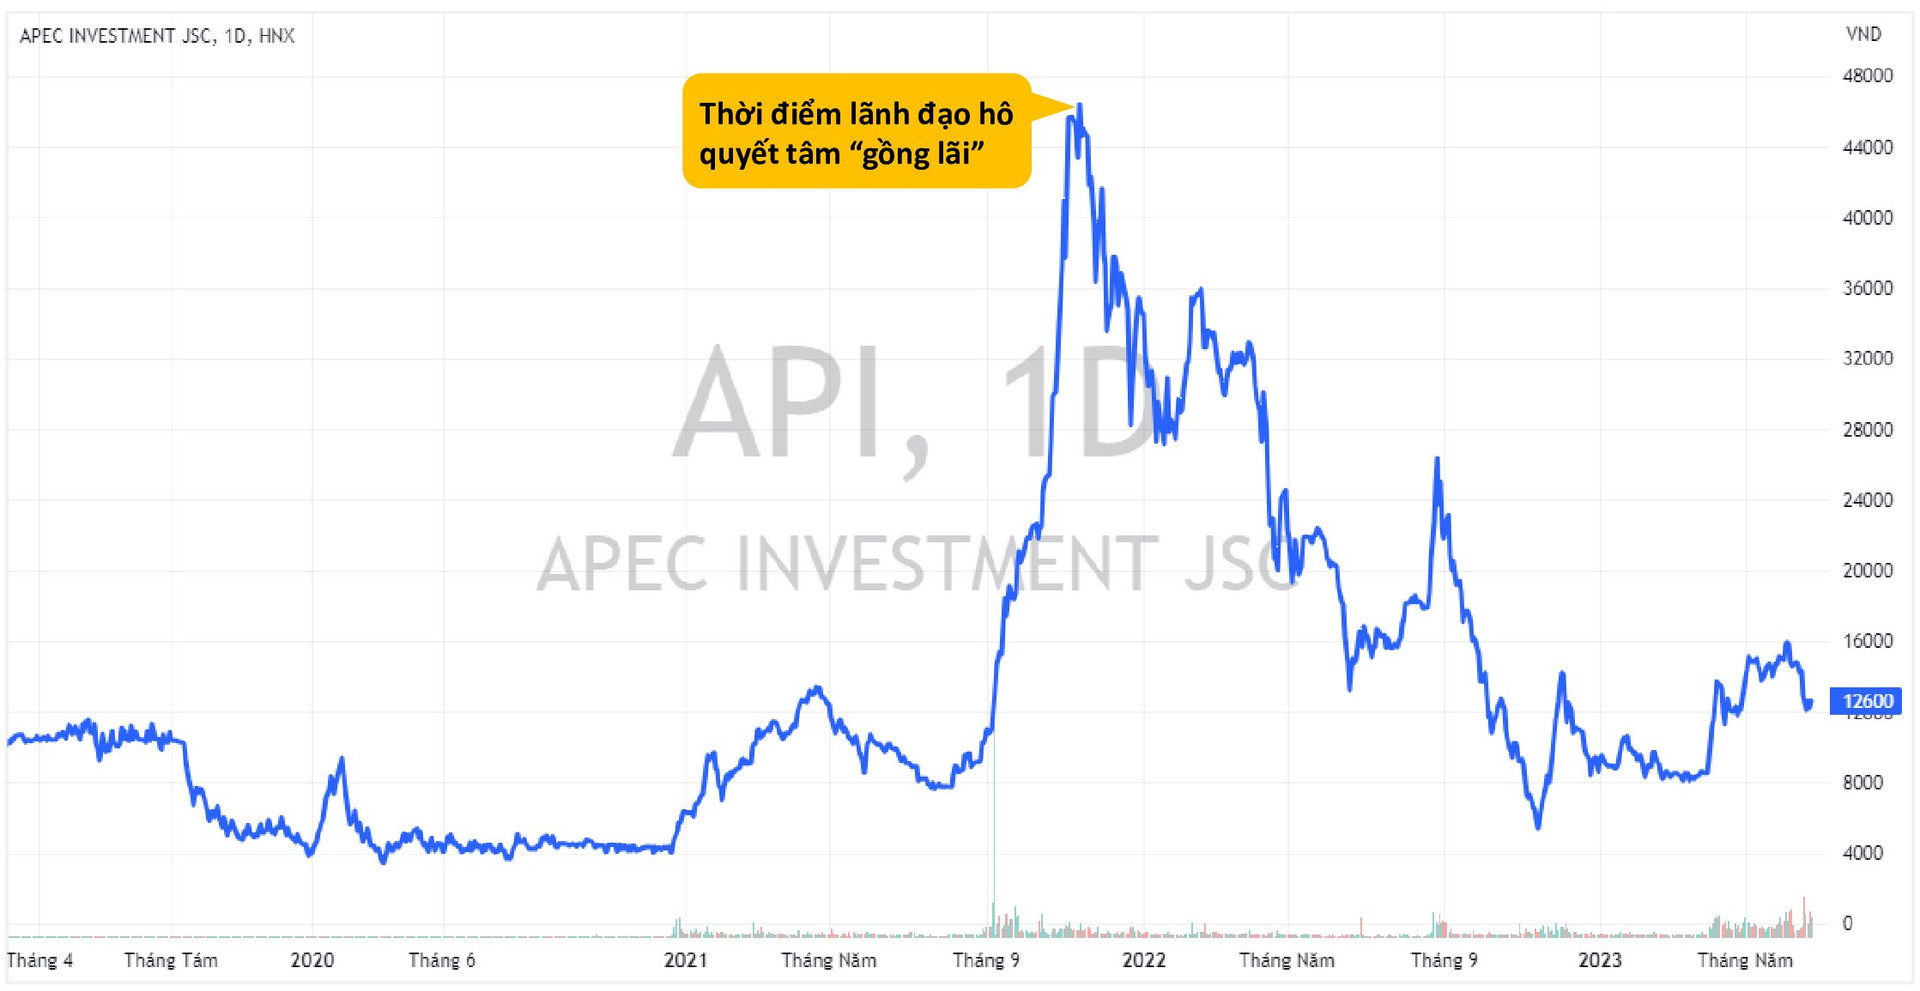 Cổ phiếu nhóm APEC đồng loạt "bốc hơi" gần 80% giá trị kể từ thời điểm lãnh đạo đeo khăn tím hô quyết tâm "gồng lãi"